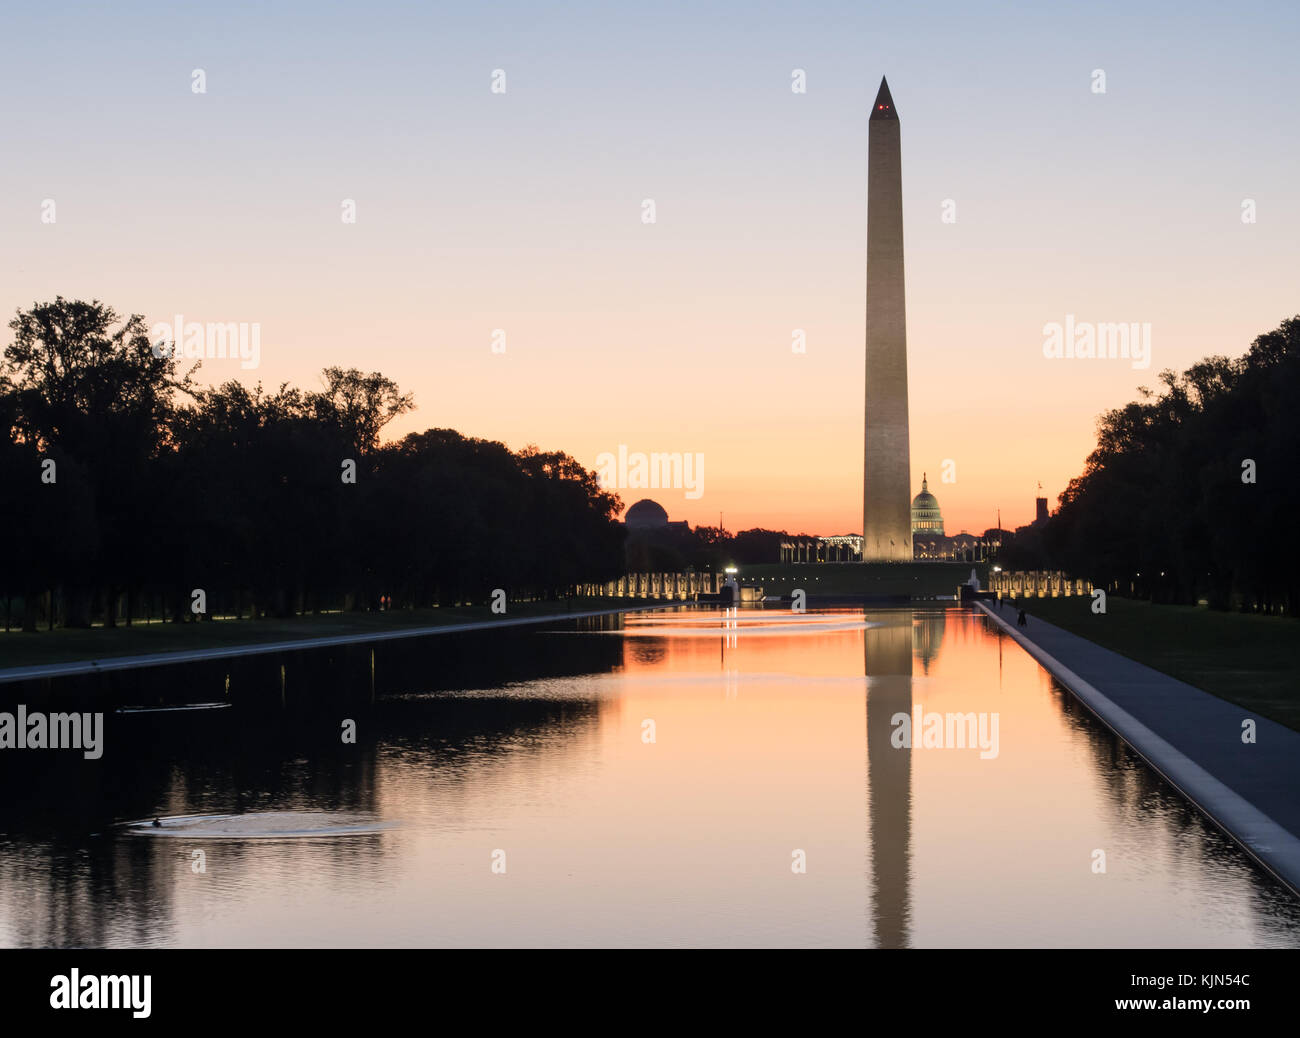 Washington monument au crépuscule, l'aube, le lever du soleil, coucher du soleil, crépuscule - la réflexion et la paix Banque D'Images